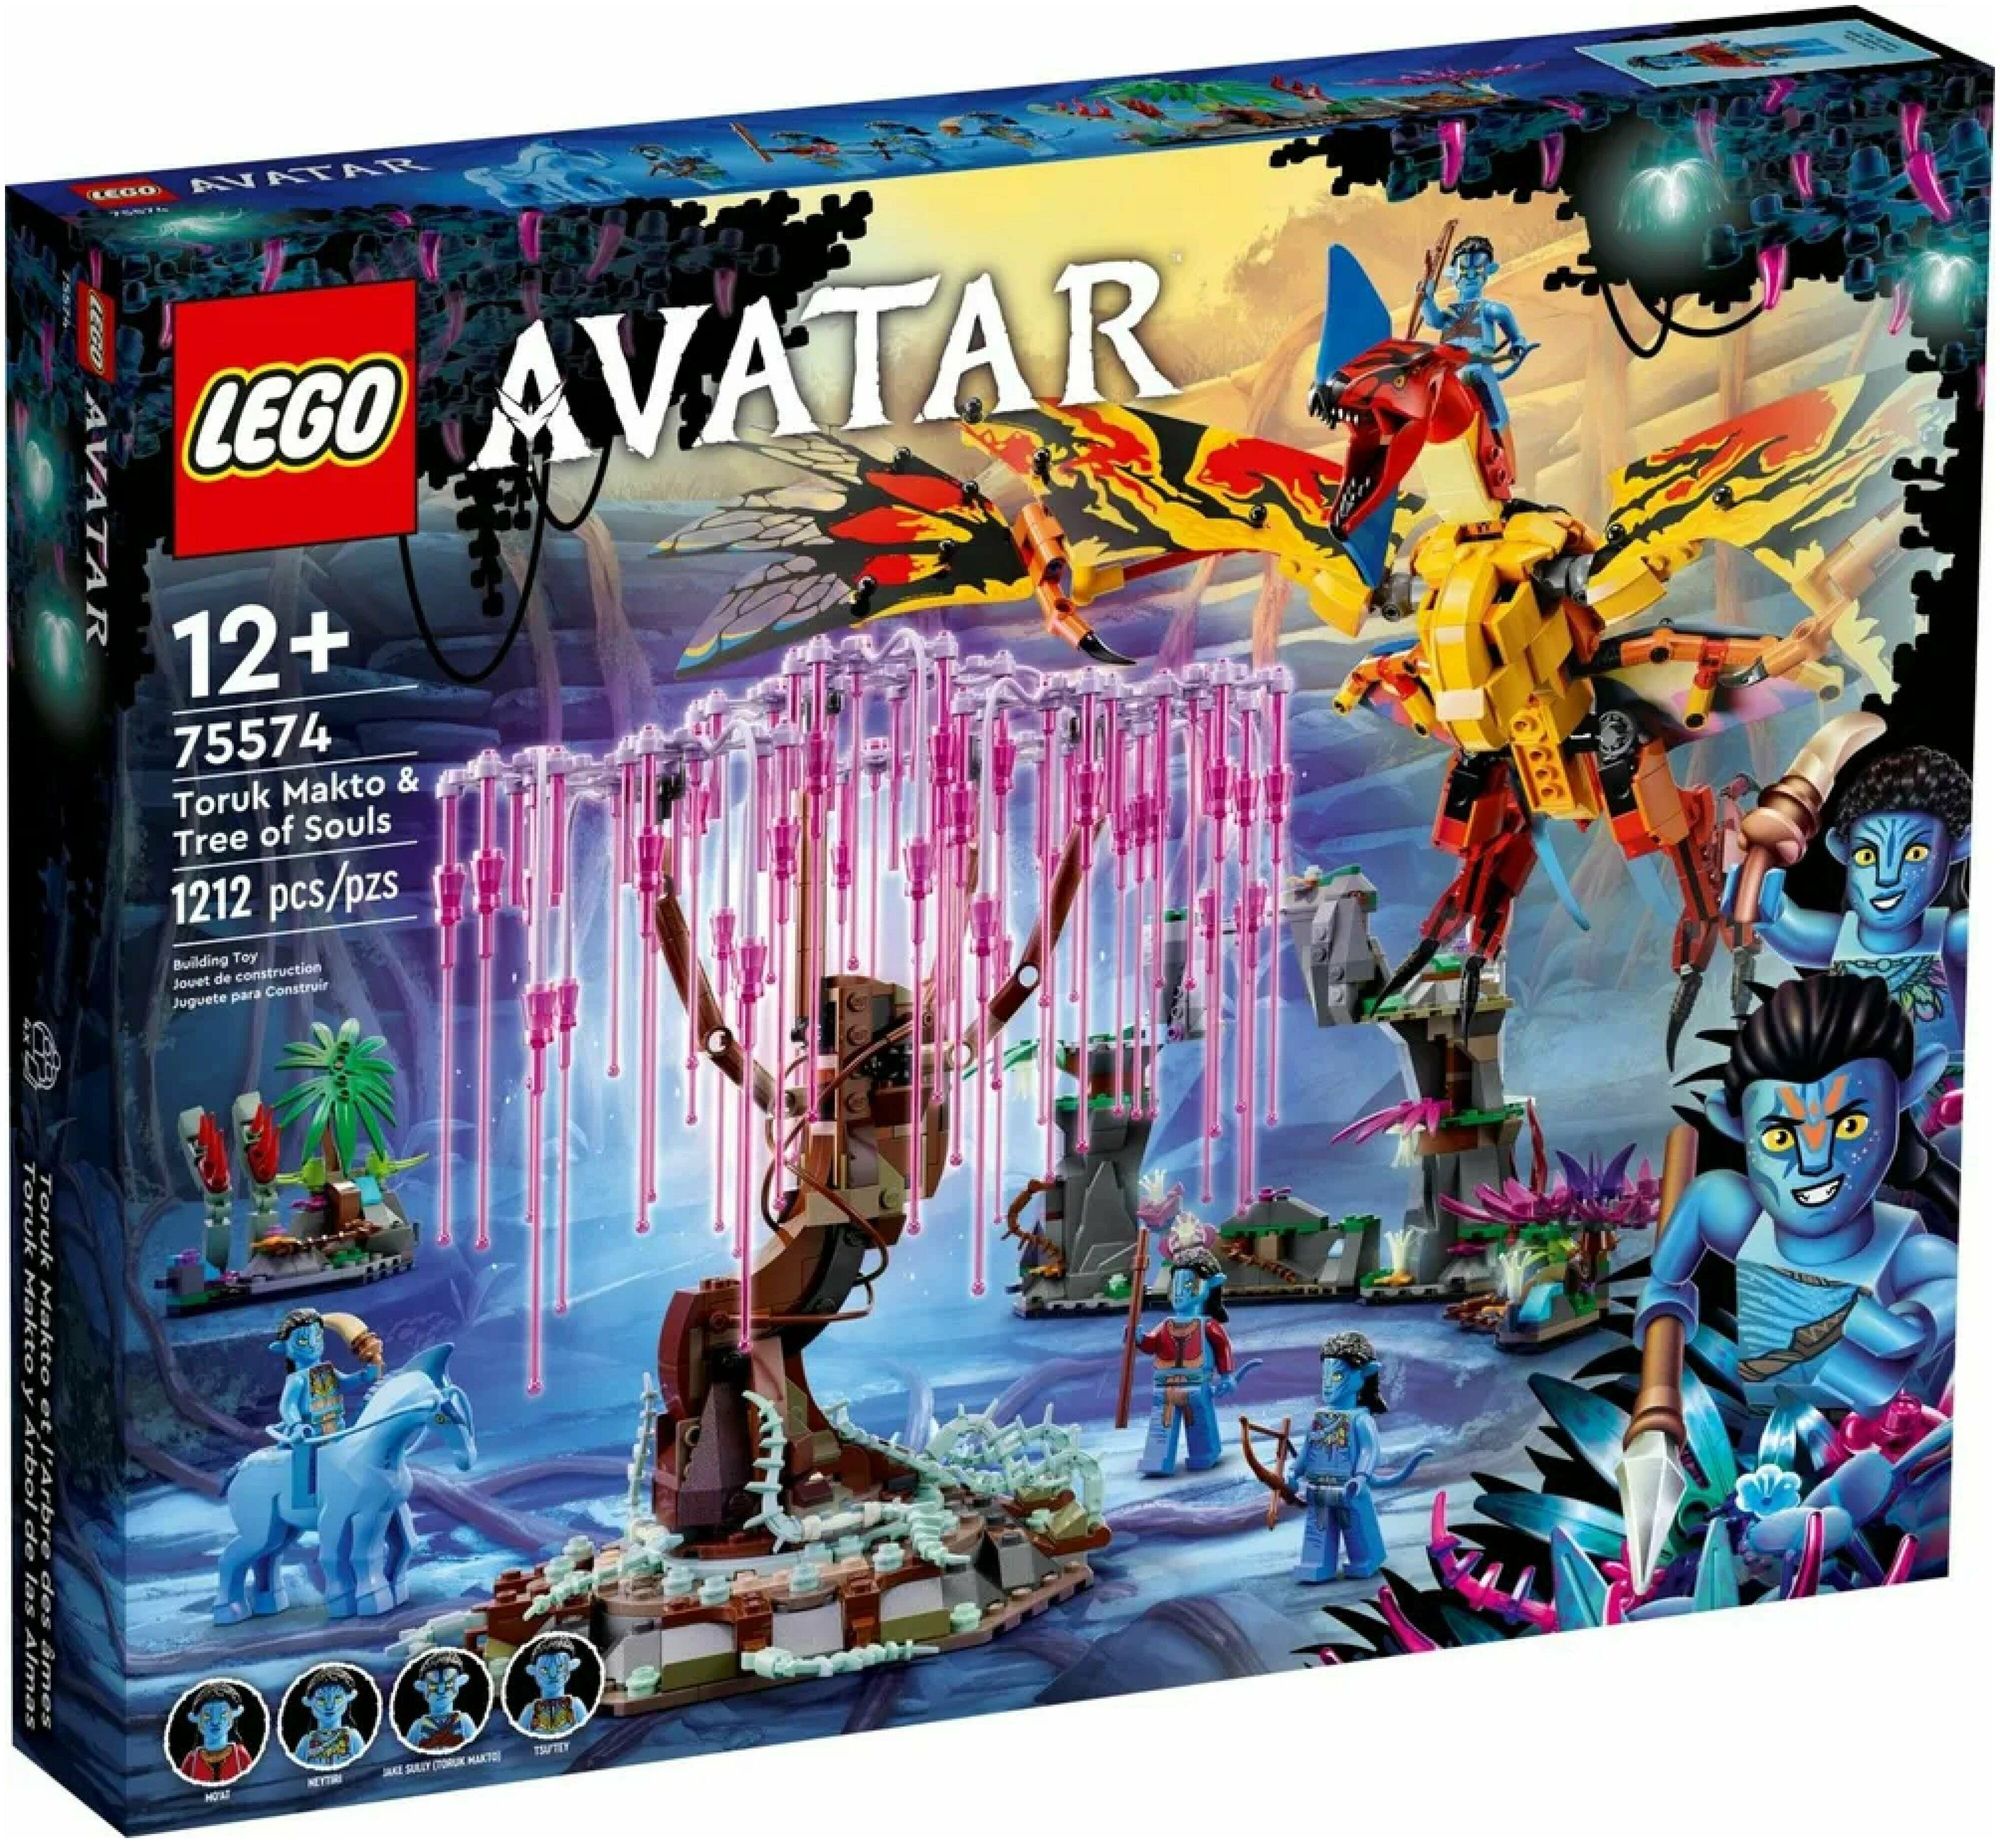 Конструктор LEGO Avatar Торук Макто и Древо душ 75574 конструктор lego avatar 75575 открытие илу